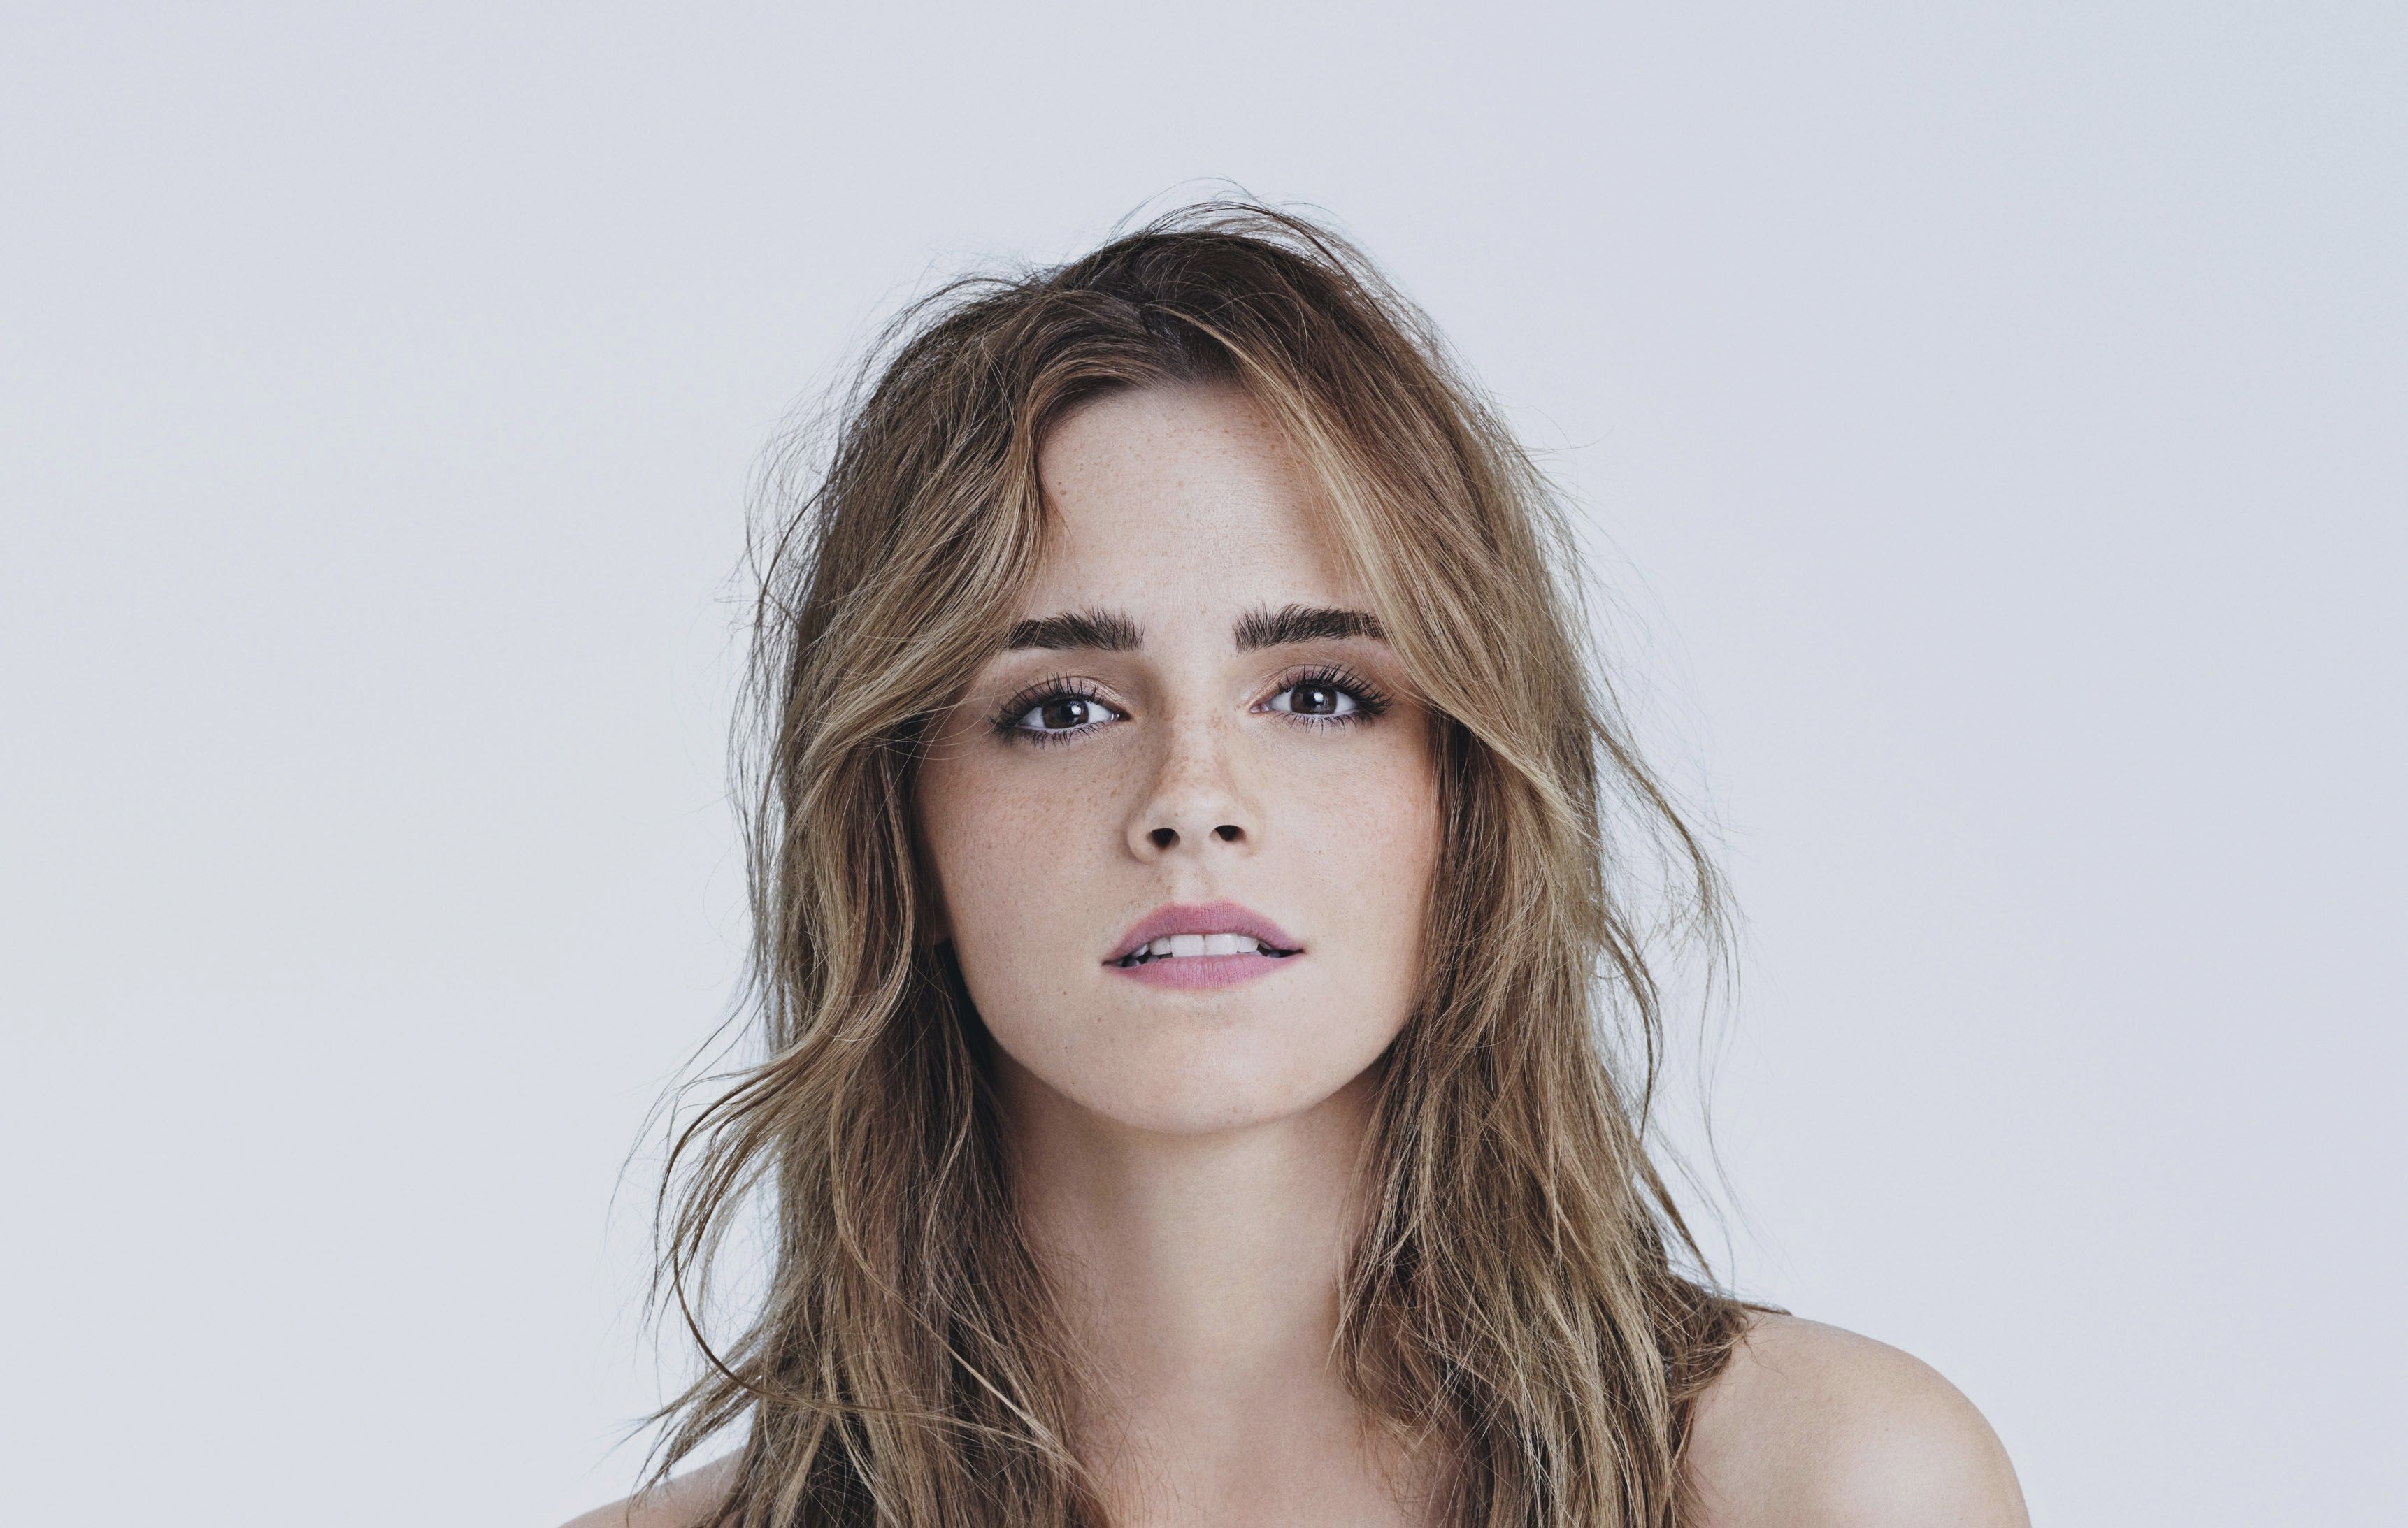 20 Hot Emma Watson Wallpapers Latest Emma Watson HD Pics Images